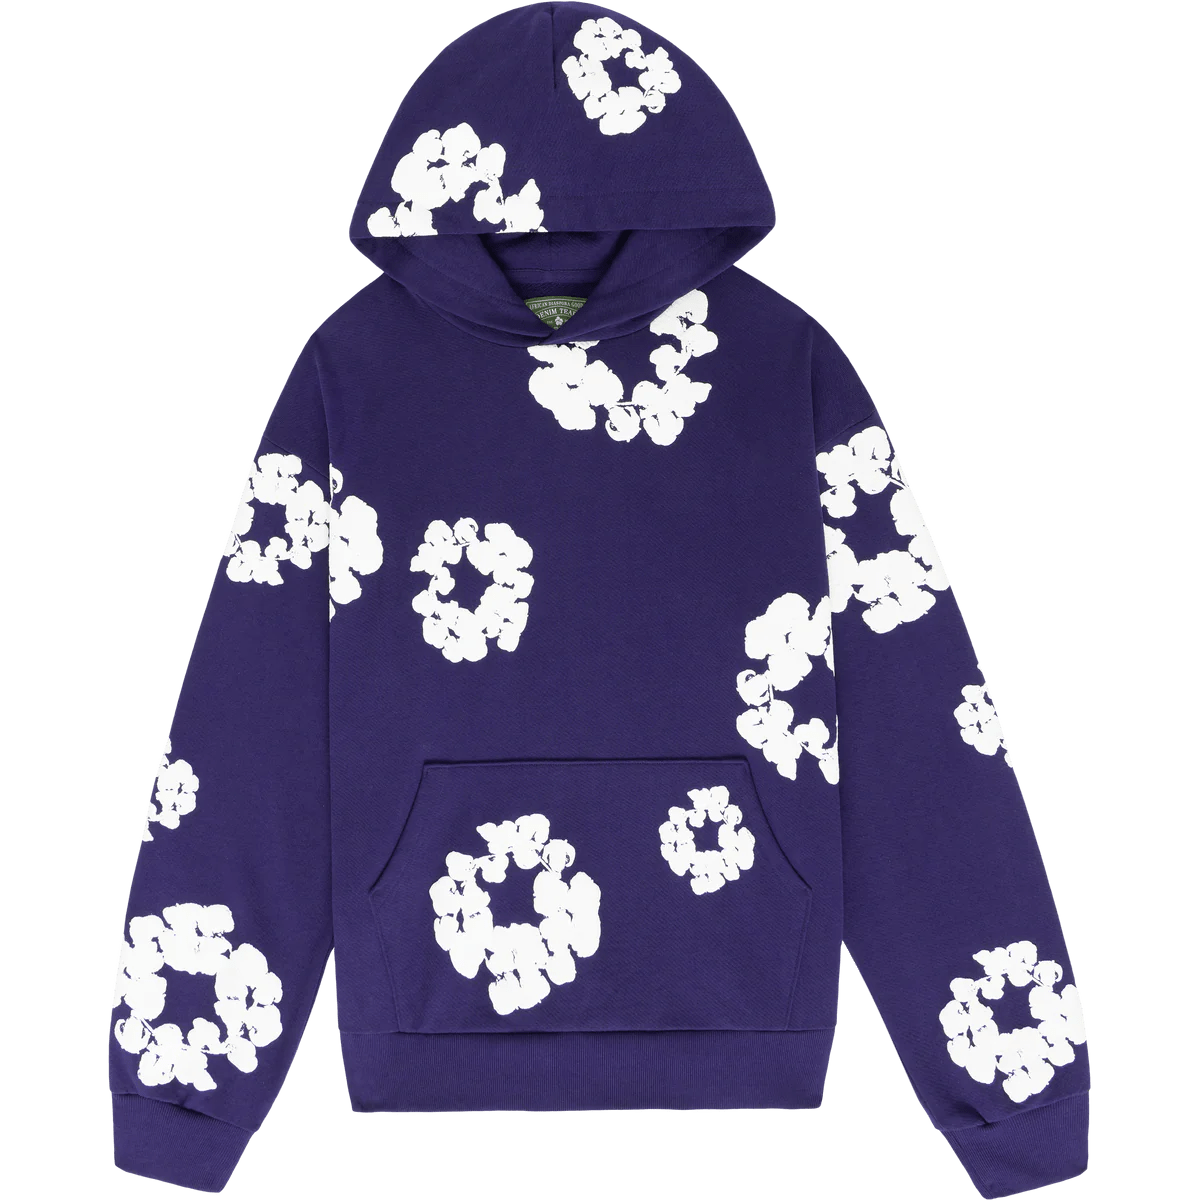 Denim Tears The Cotton Wreath Sweatshirt Purple - Sneakersbe Sneakers Sale Online